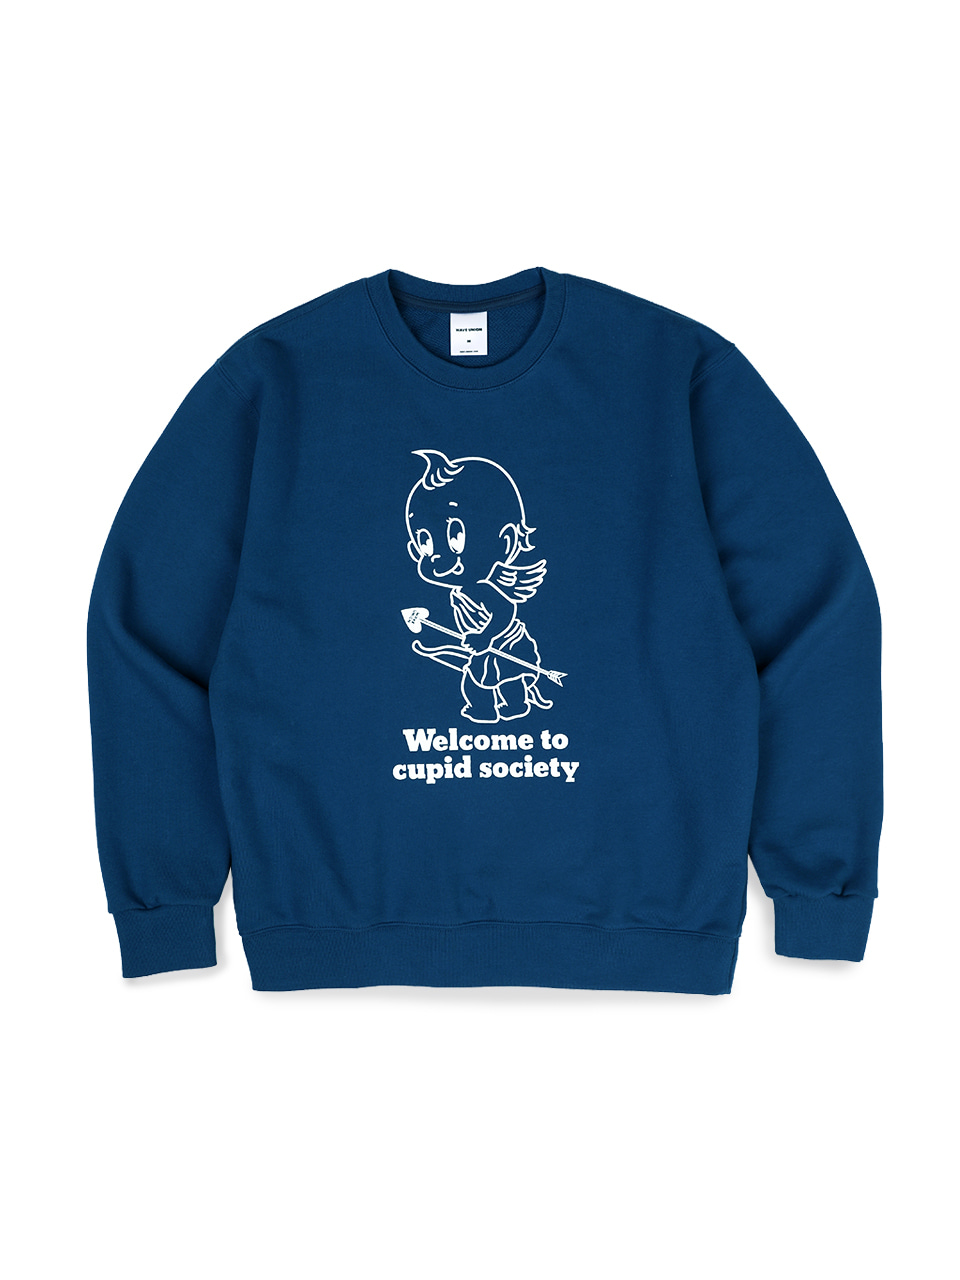 Cupid society Sweatshirt deep blue